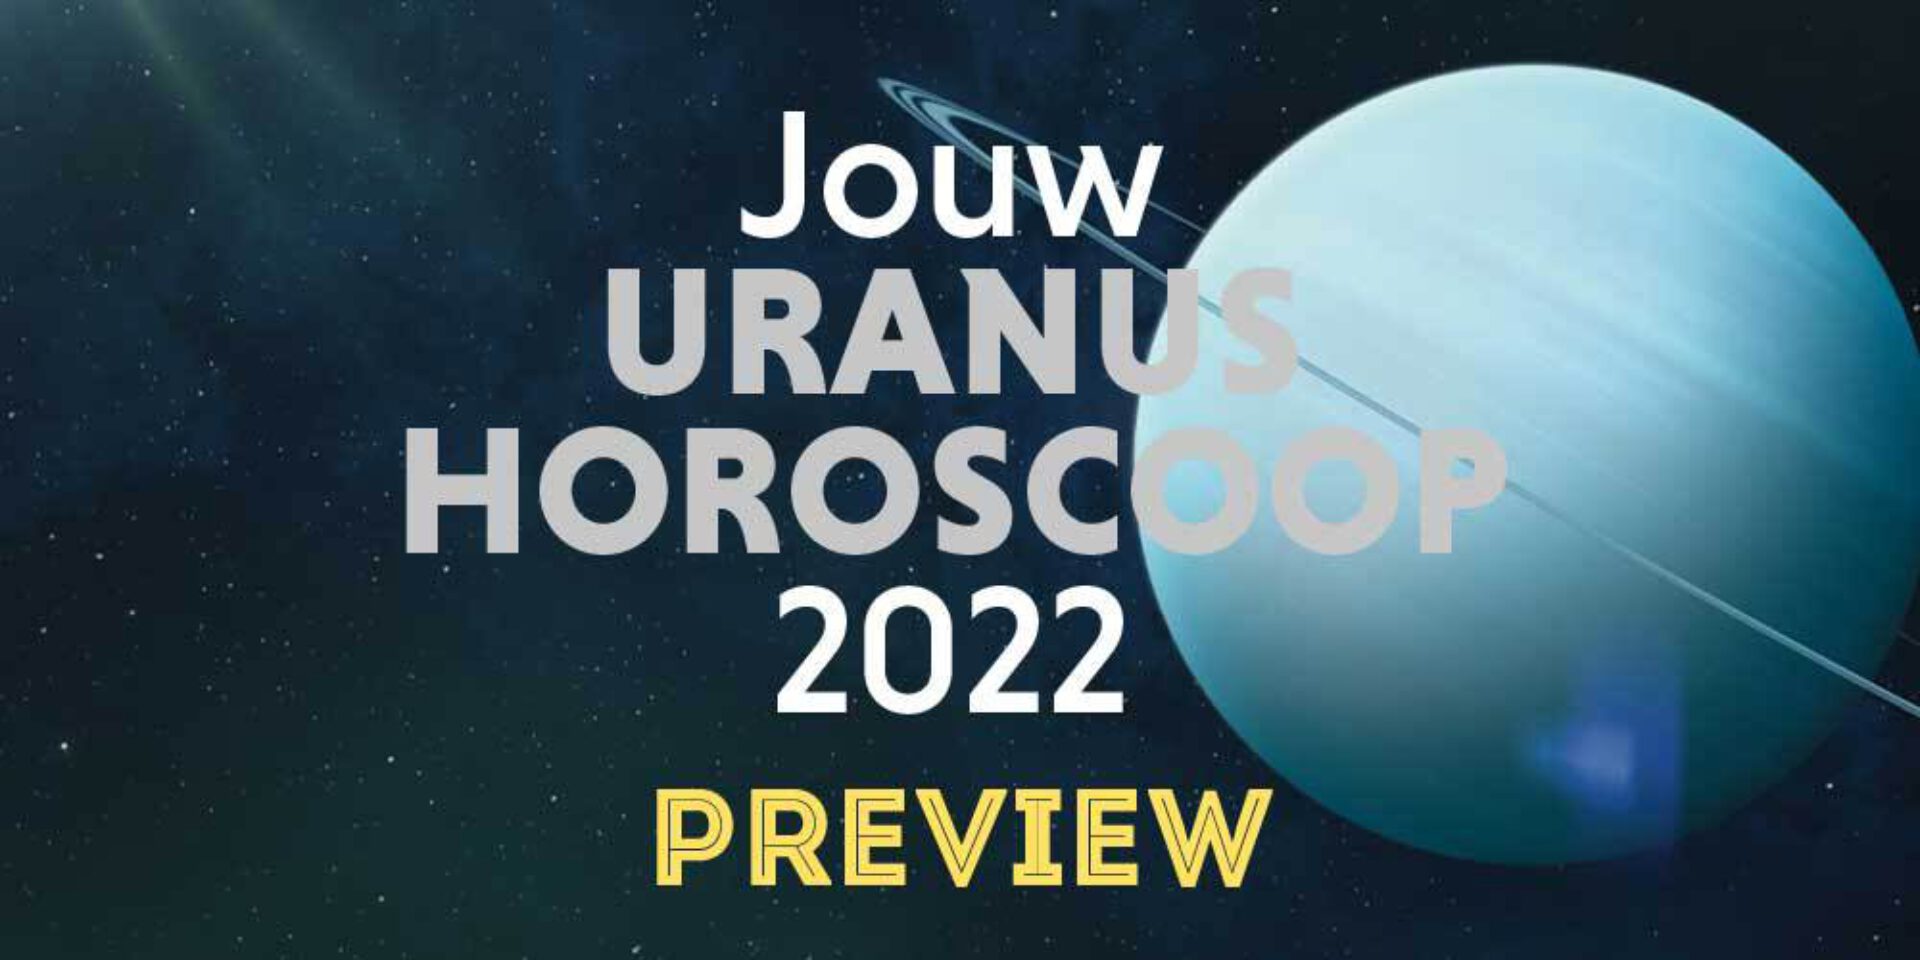 Jouw Uranushoroscoop 2022: aan welke veranderingen ben jij onderhevig?